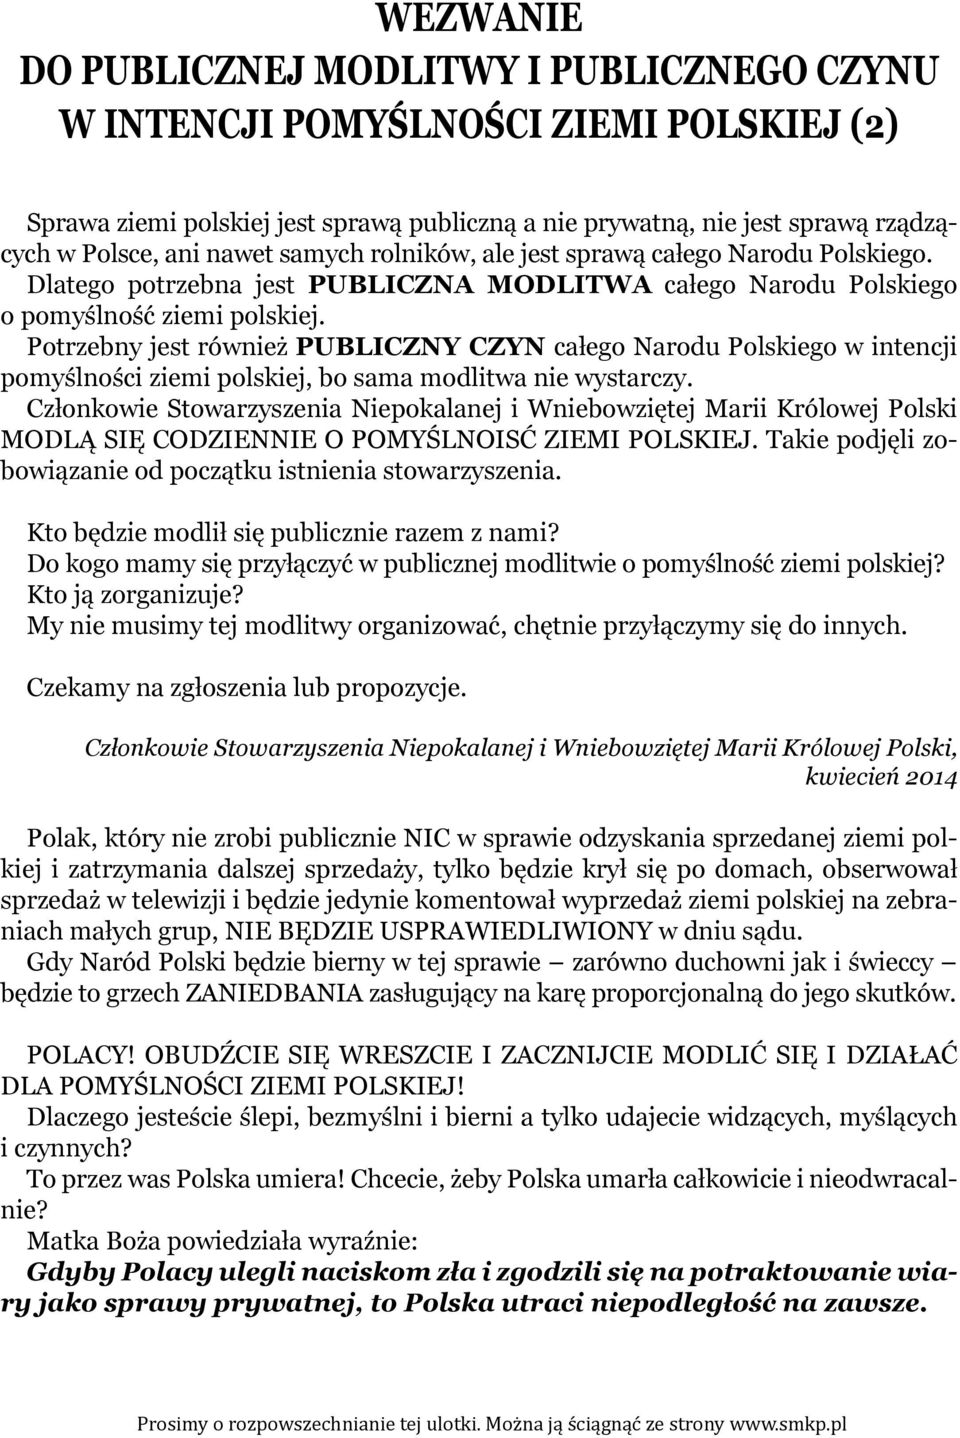 Potrzebny jest również PUBLICZNY CZYN całego Narodu Polskiego w intencji pomyślności ziemi polskiej, bo sama modlitwa nie wystarczy.